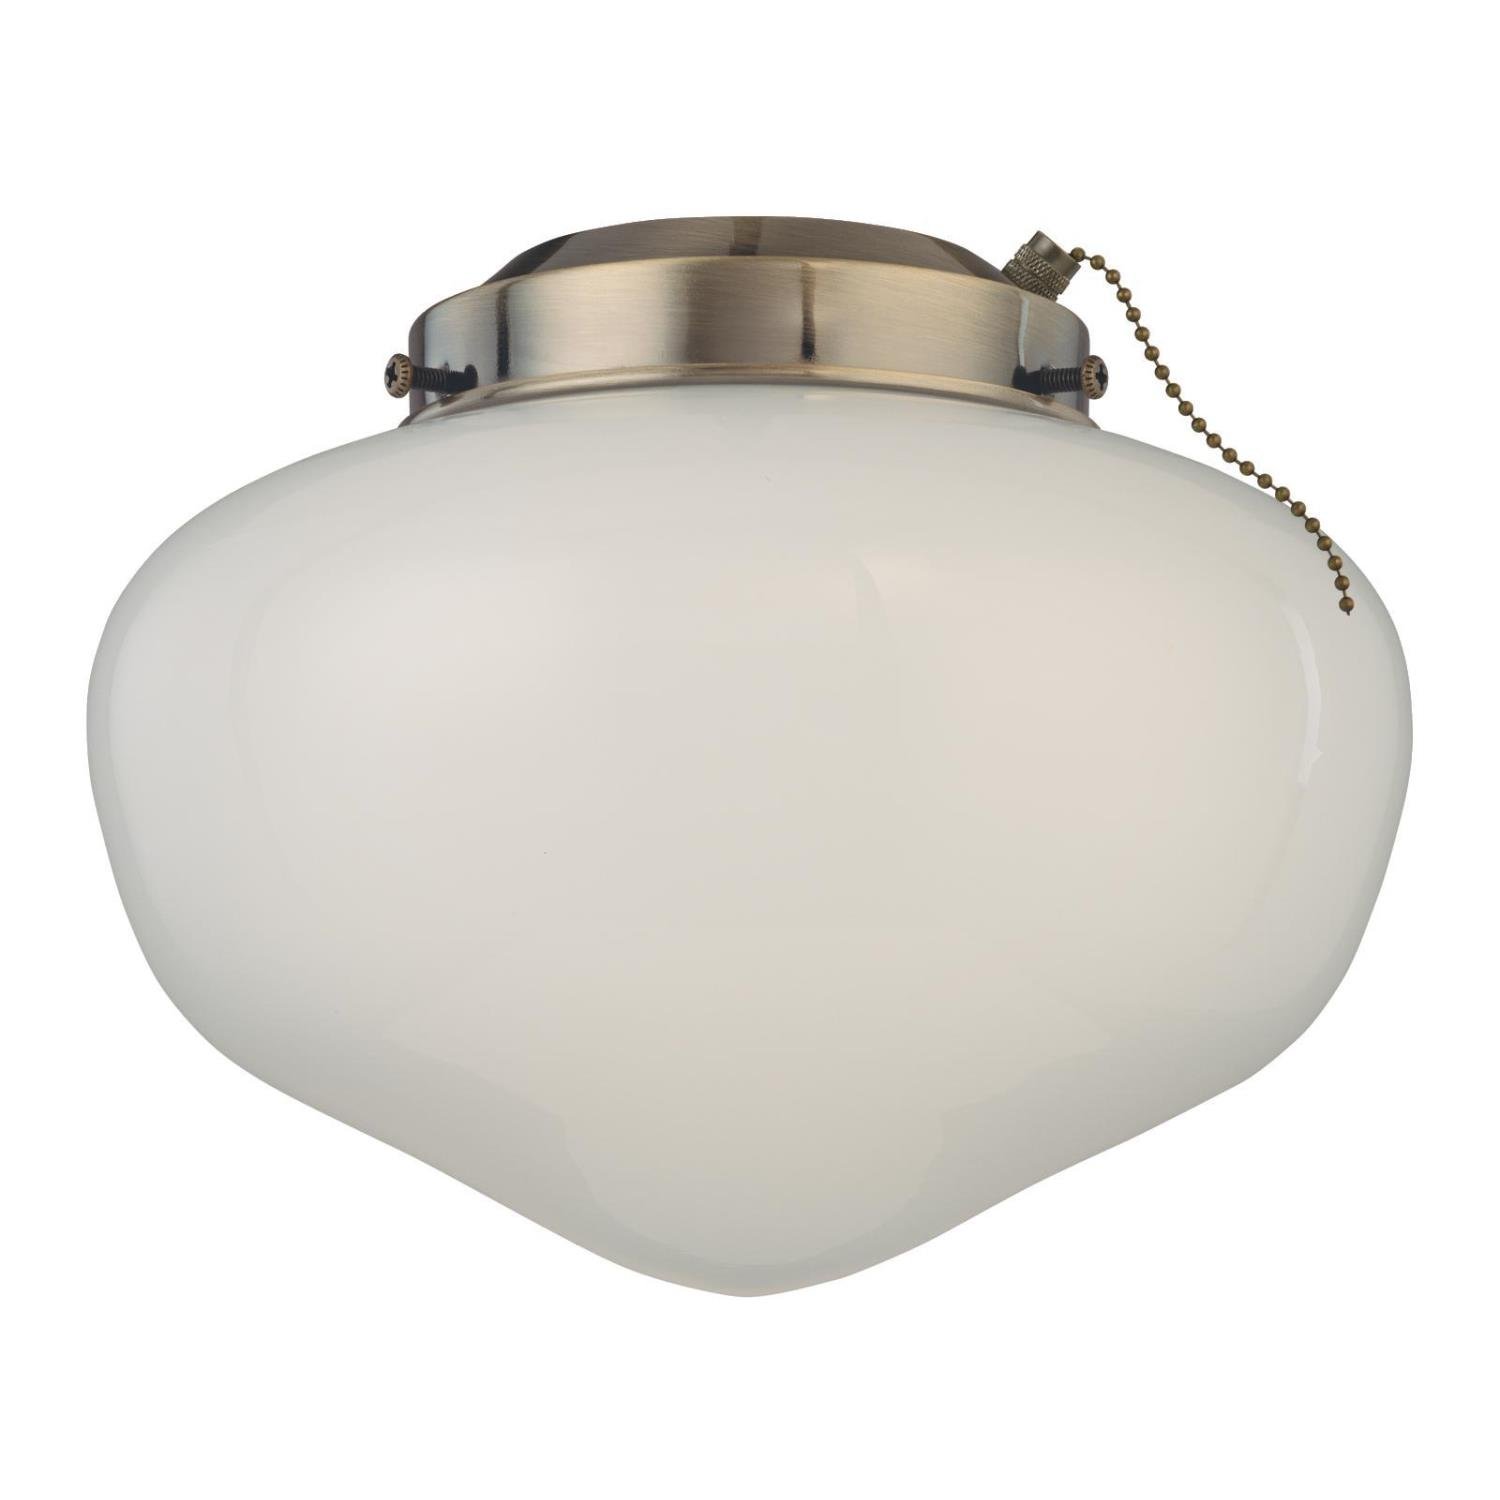 LED Schoolhouse Ceiling Fan Light Kit Antique Brass Finish White Opal Glass